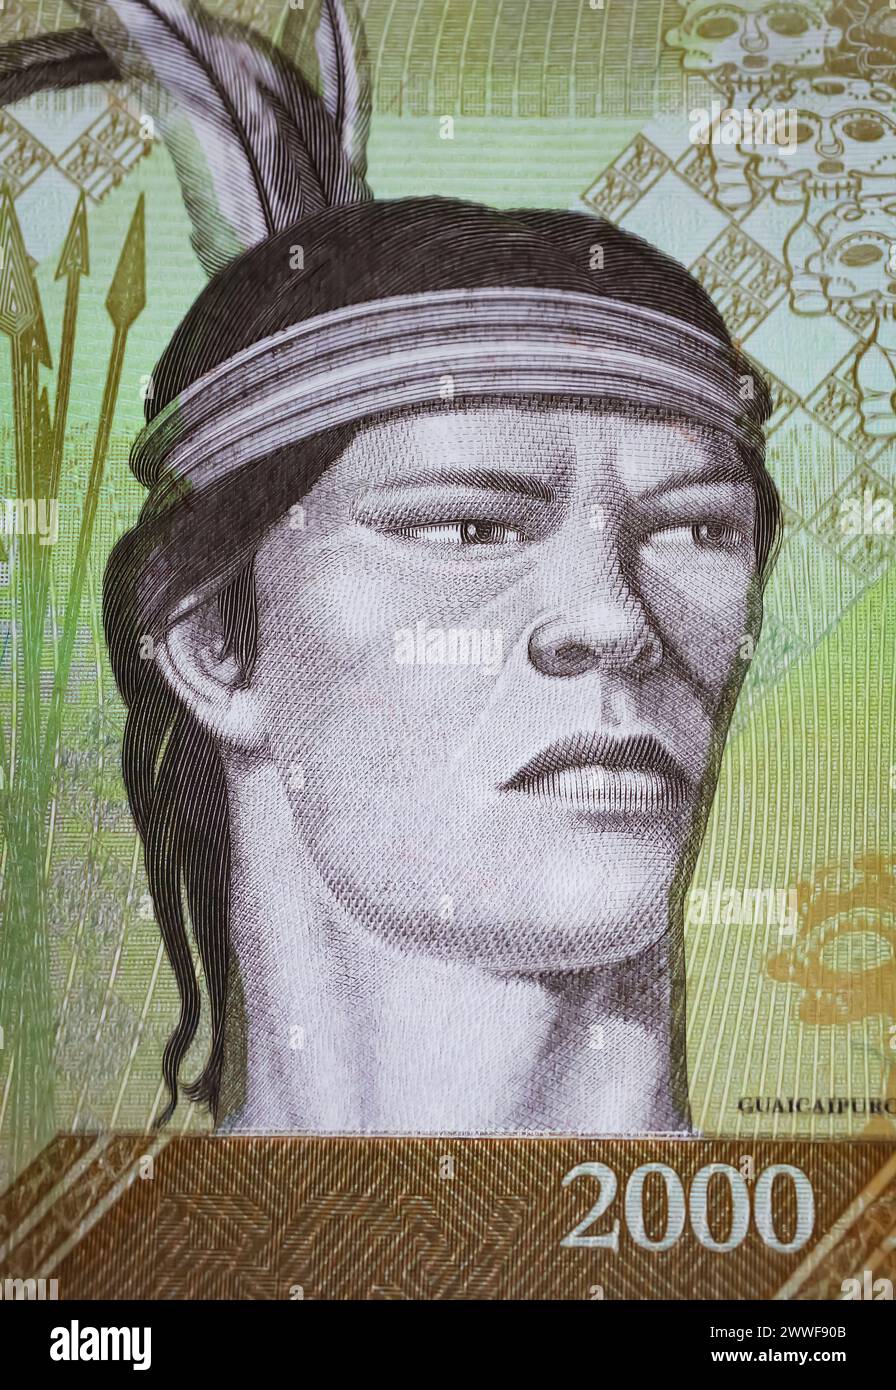 Ritratto del capo tribù indigena Cacique Guaicaipuro sulla banconota in valuta del Venezuela da 2000 Bolivar (focalizzazione sul centro) Foto Stock